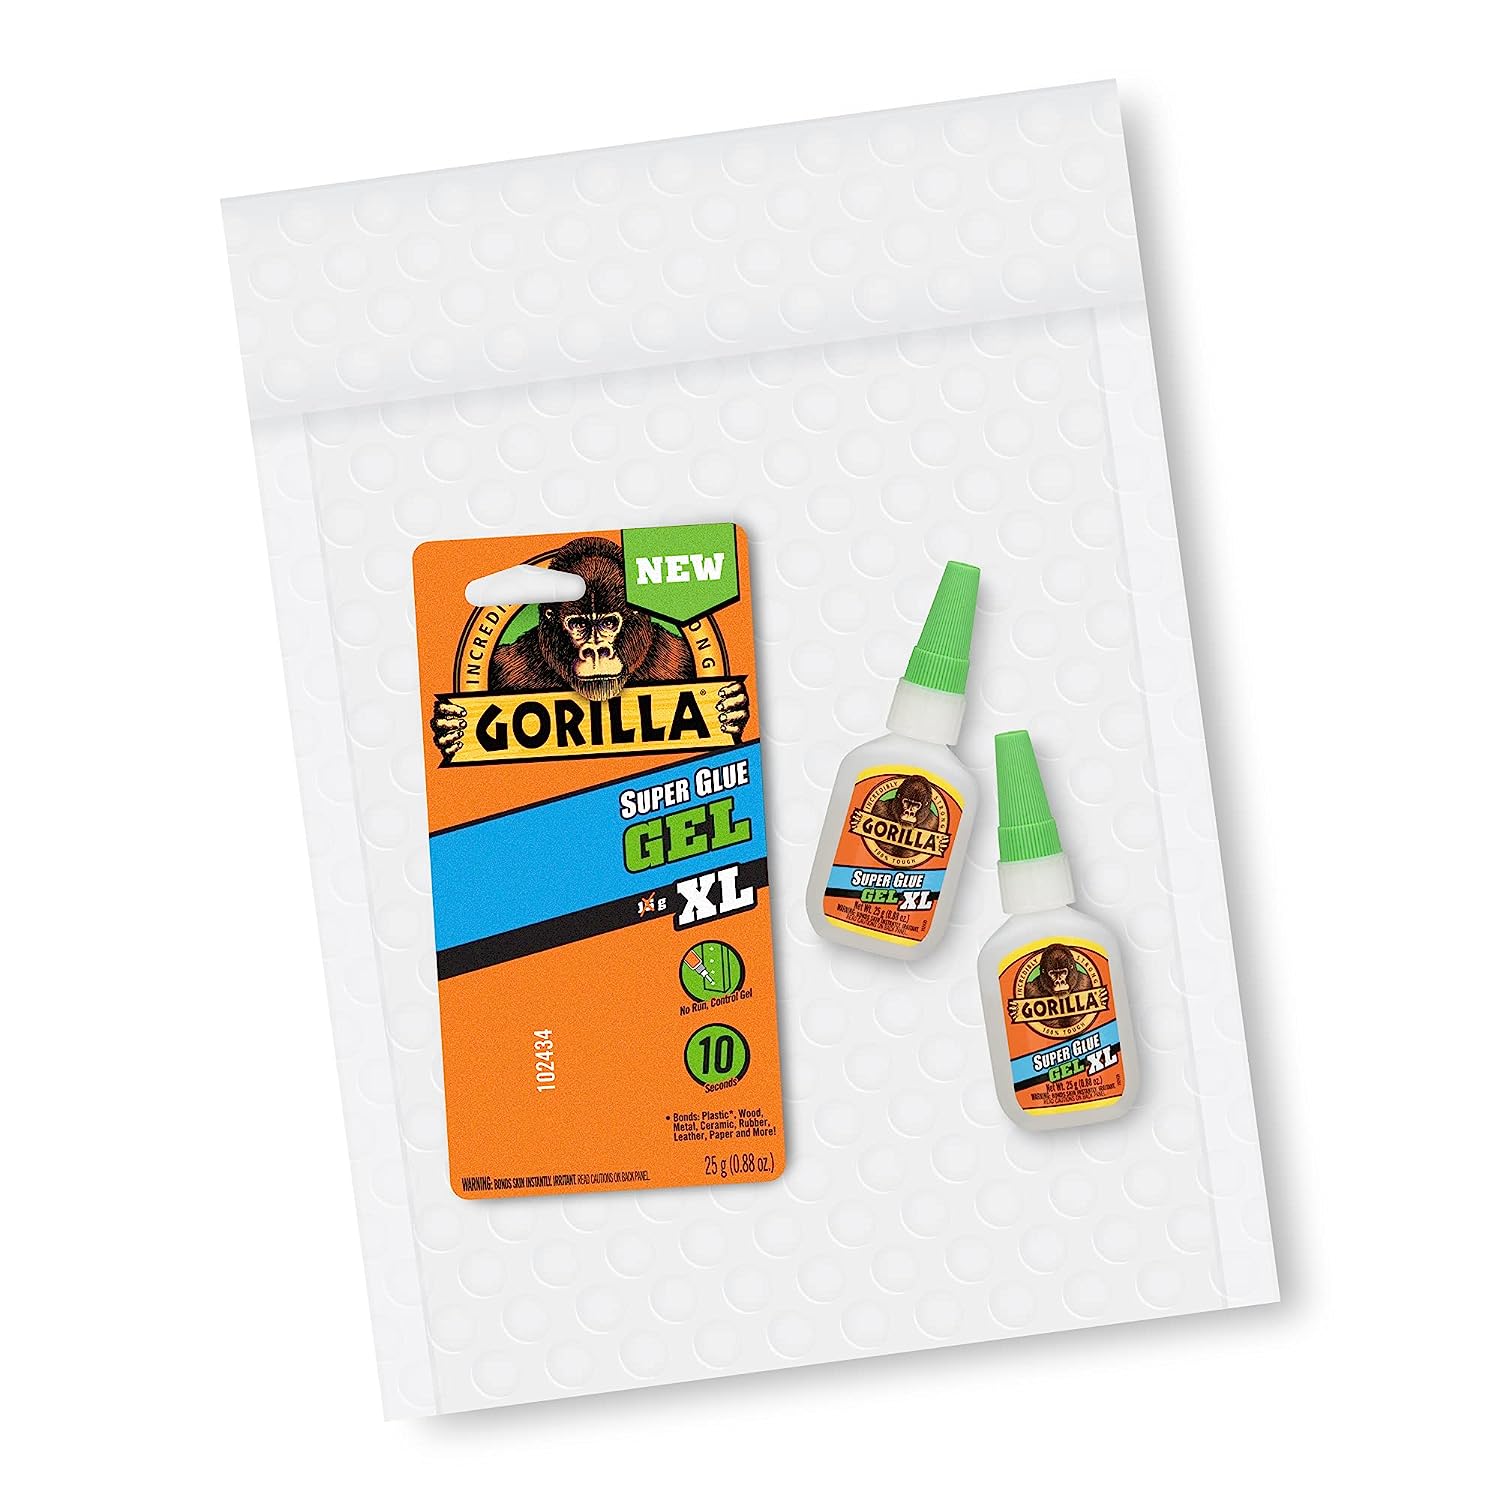 Gorilla Super Glue Gel XL, 25 Gram, Clear, (Pack of 2)